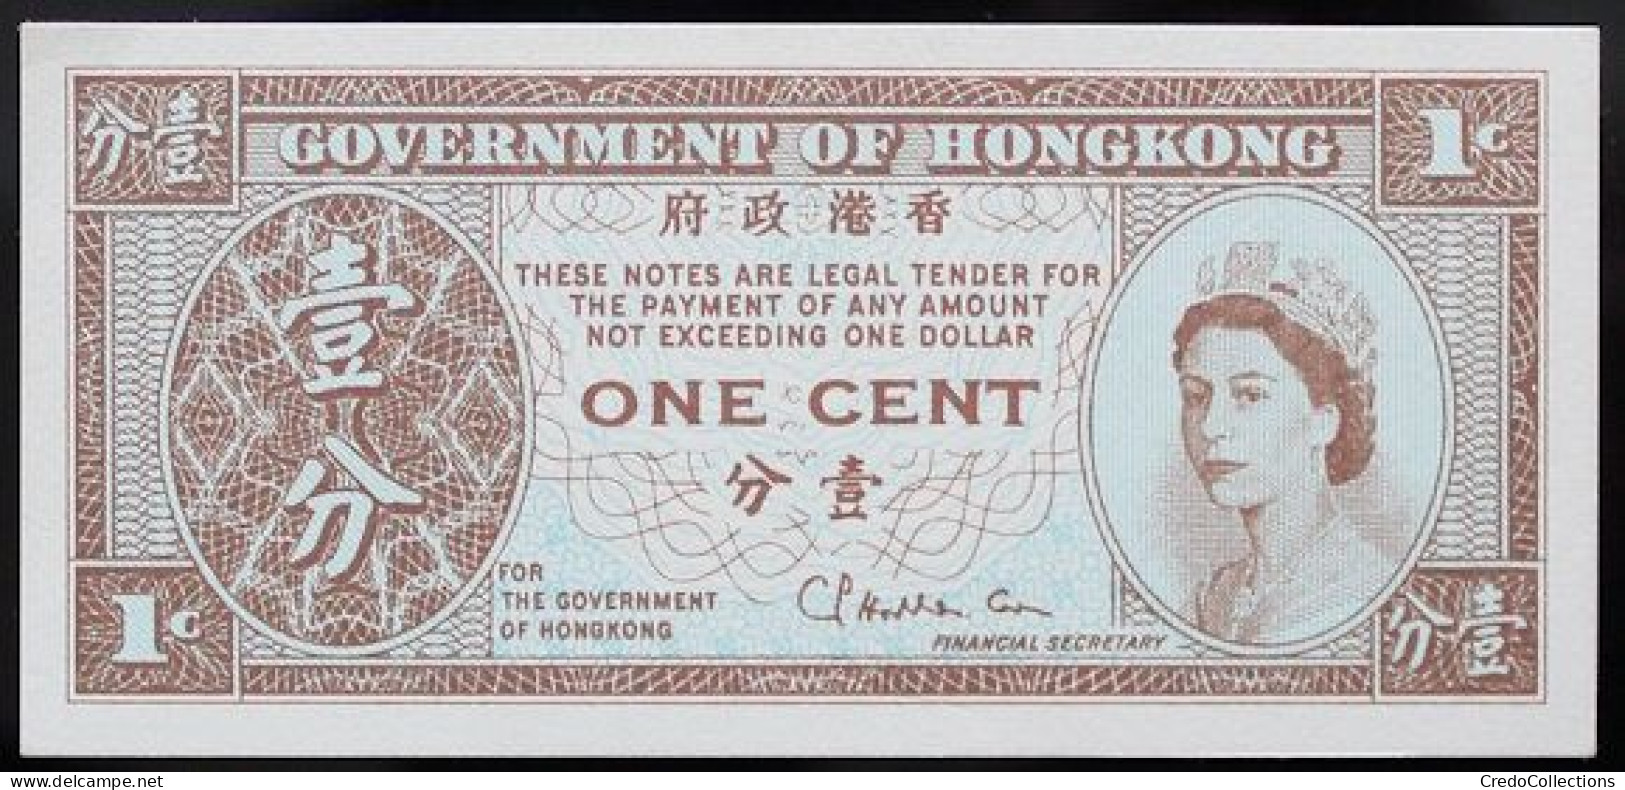 Hong Kong - 1 Cent - 1971 - PICK 325b - NEUF - Hongkong